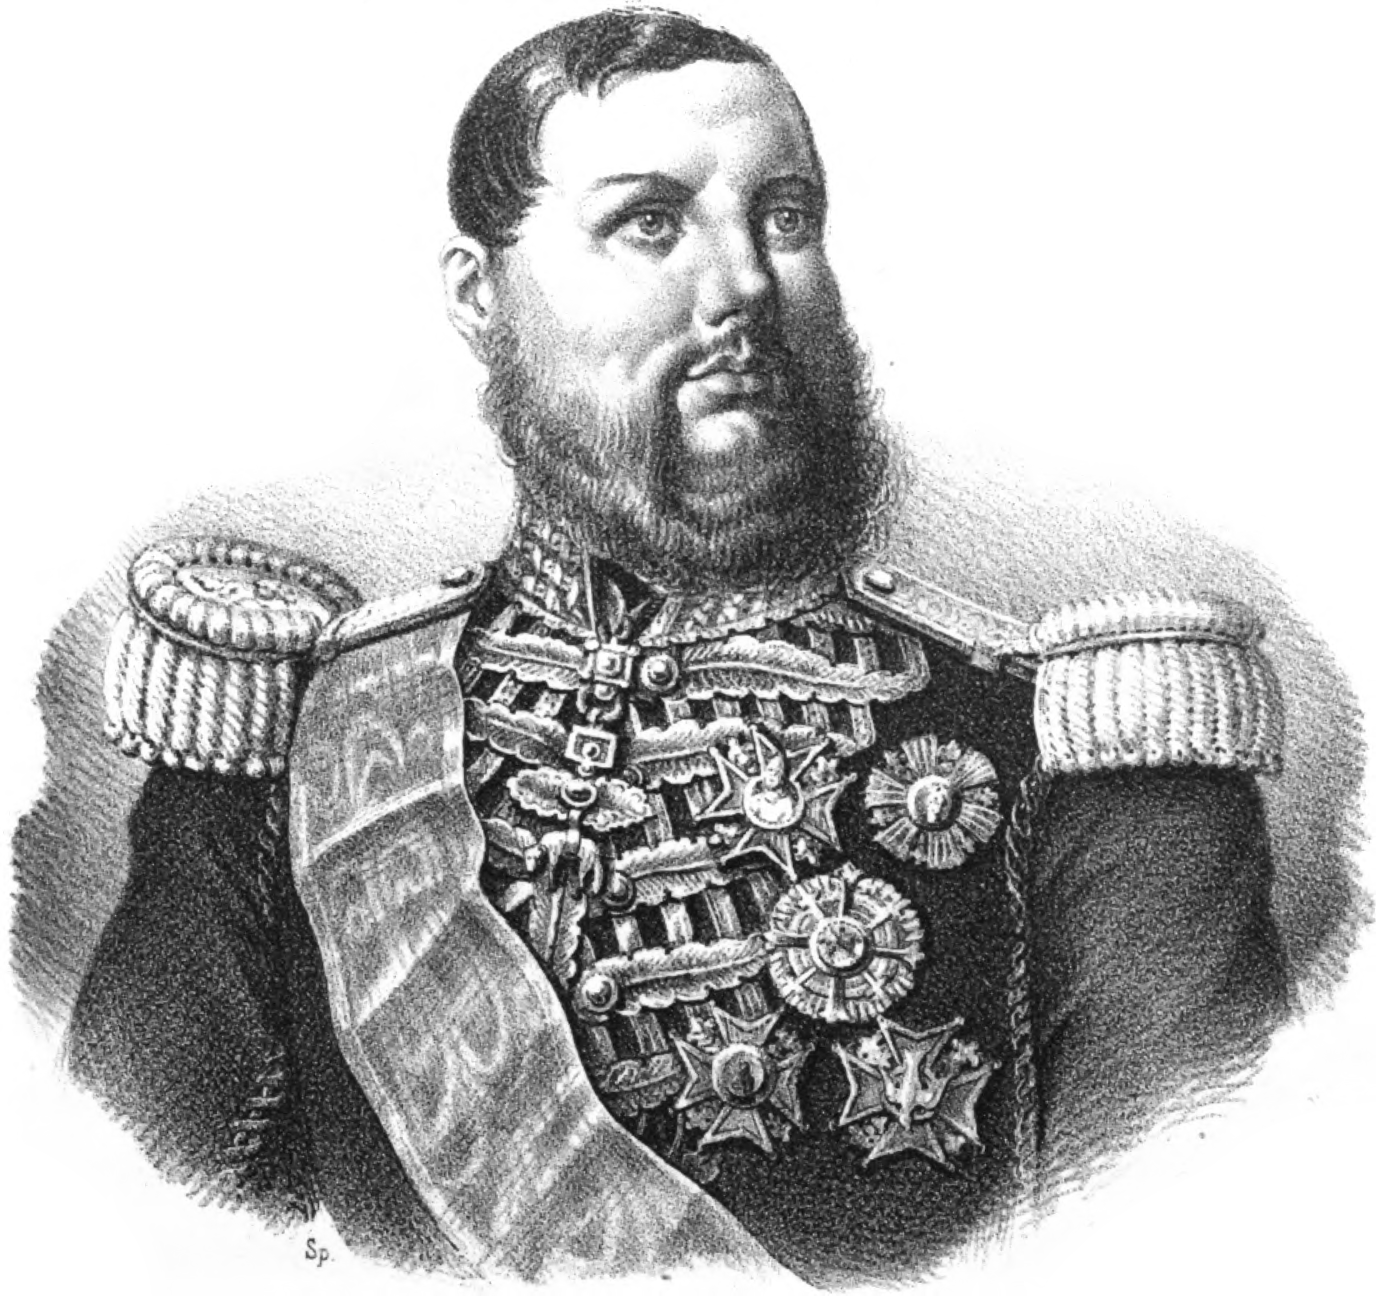 D. Leopoldo Borbone - Colonnello Generale Comandante ed Ispettore della Guardia Reale